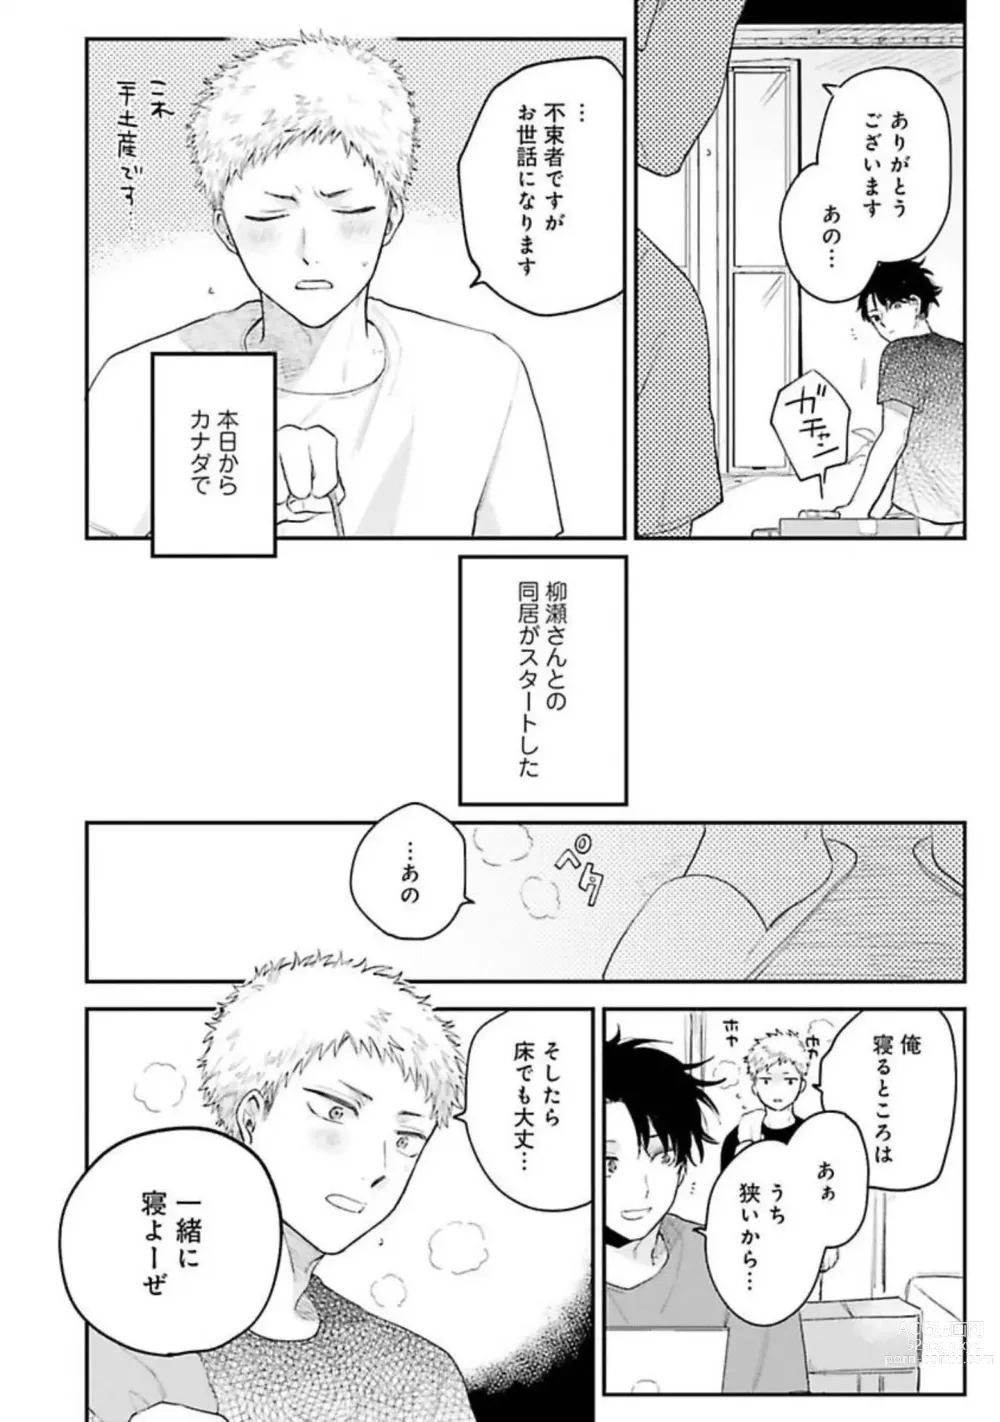 Page 156 of manga Senpai, Danjite Koi de wa!